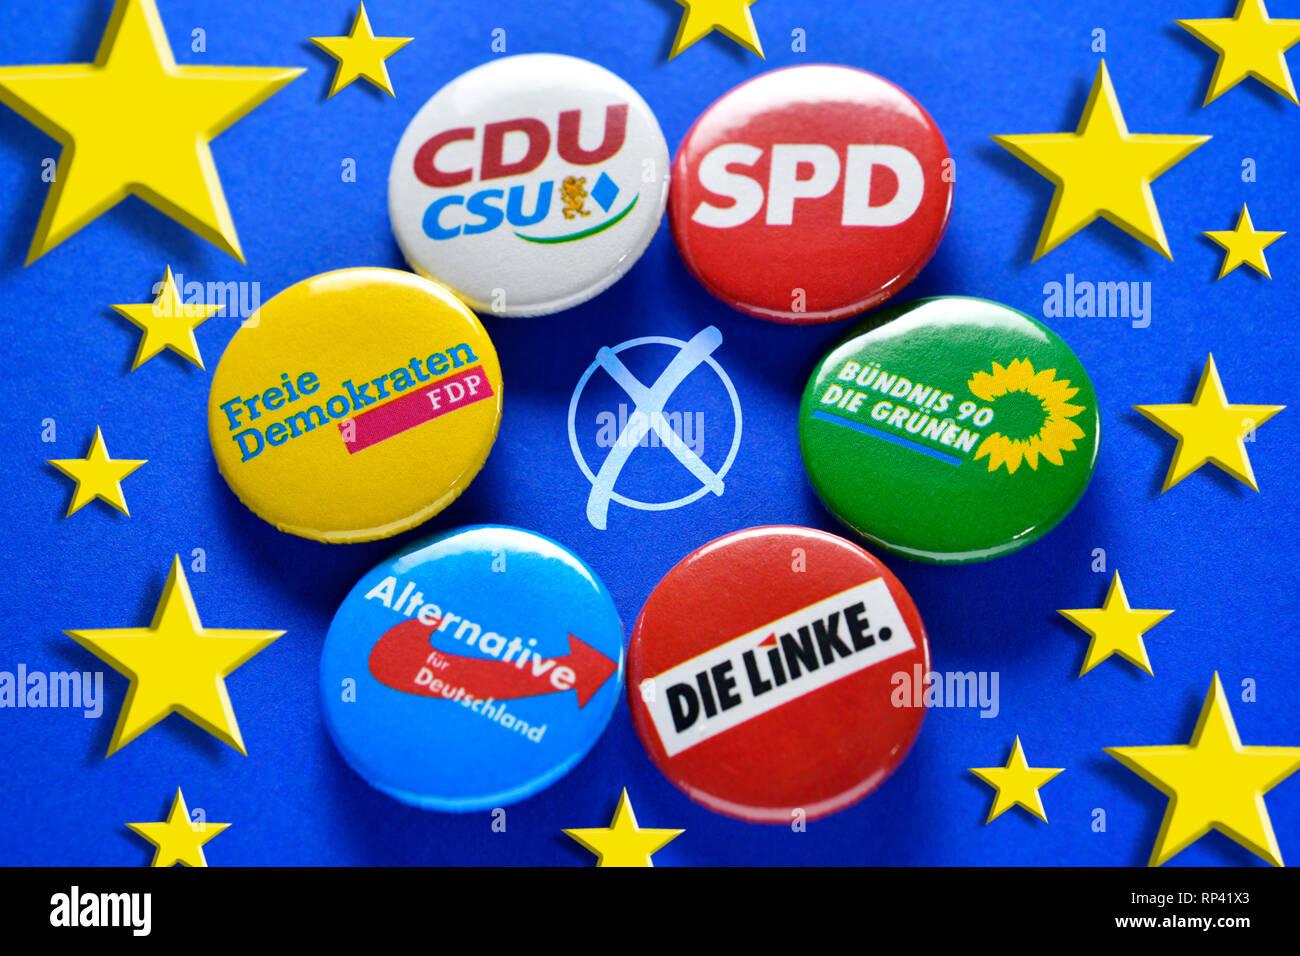 Anstecker of German parties with EU stars and electoral cross, symbolic photo European choice, Anstecker deutscher Parteien mit EU-Sternen und Wahlkre Stock Photo